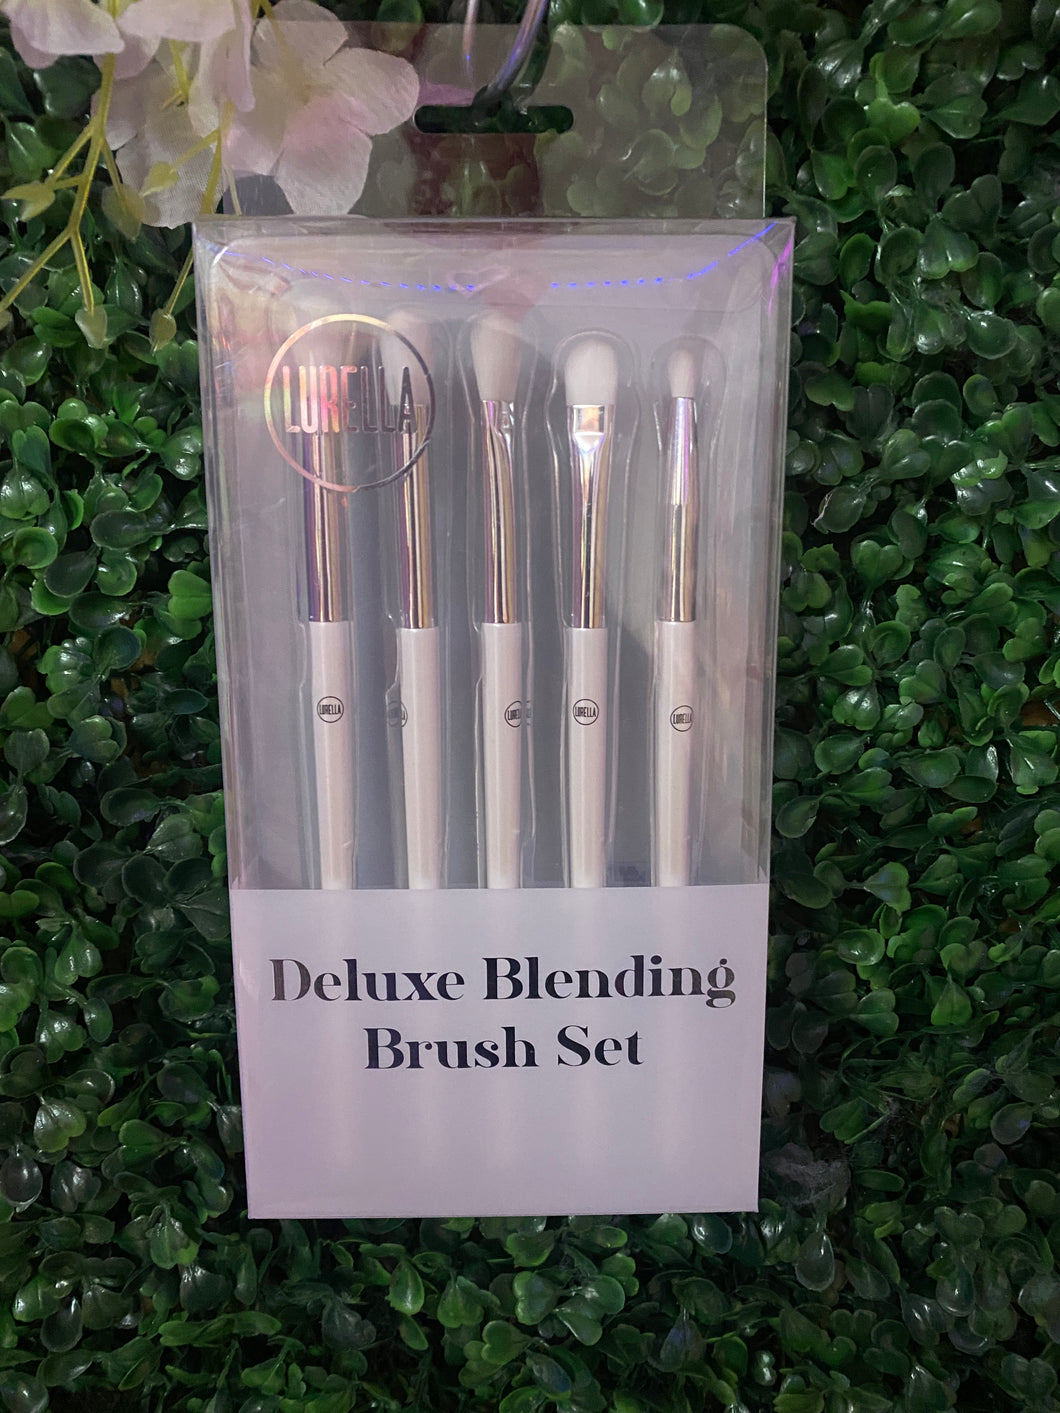 Lurella Deluxe Blending Brush set